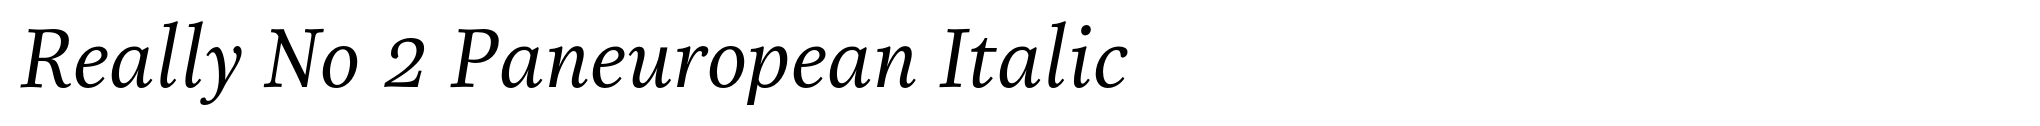 Really No 2 Paneuropean Italic image